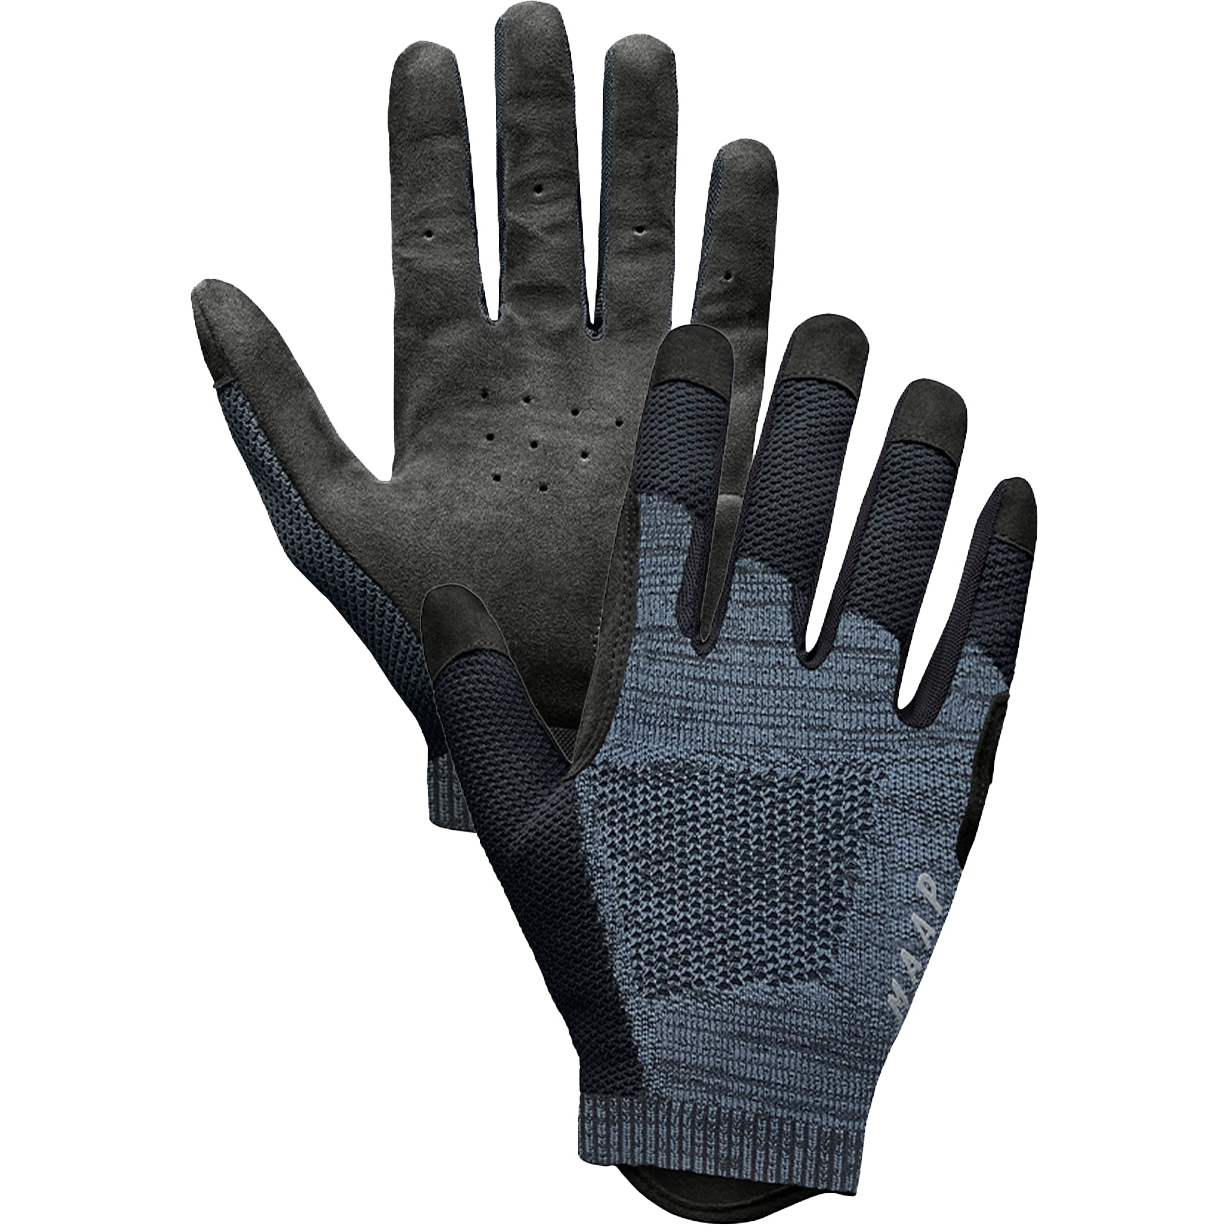 Produktbild von MAAP Alt Road Handschuhe - stargazer